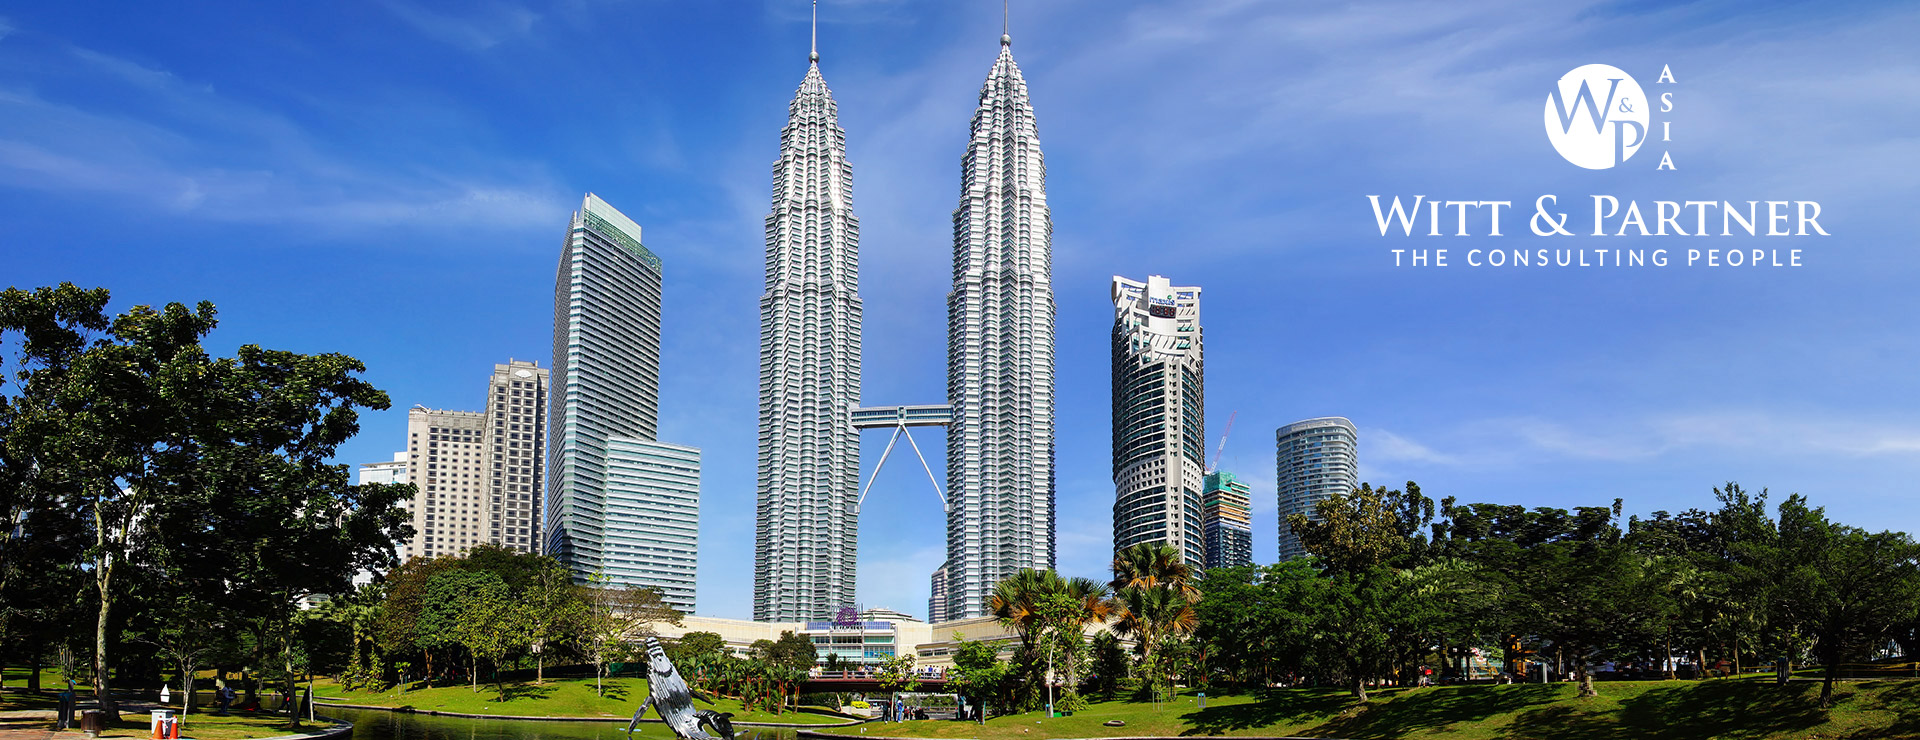 Bild: Petronas Towers